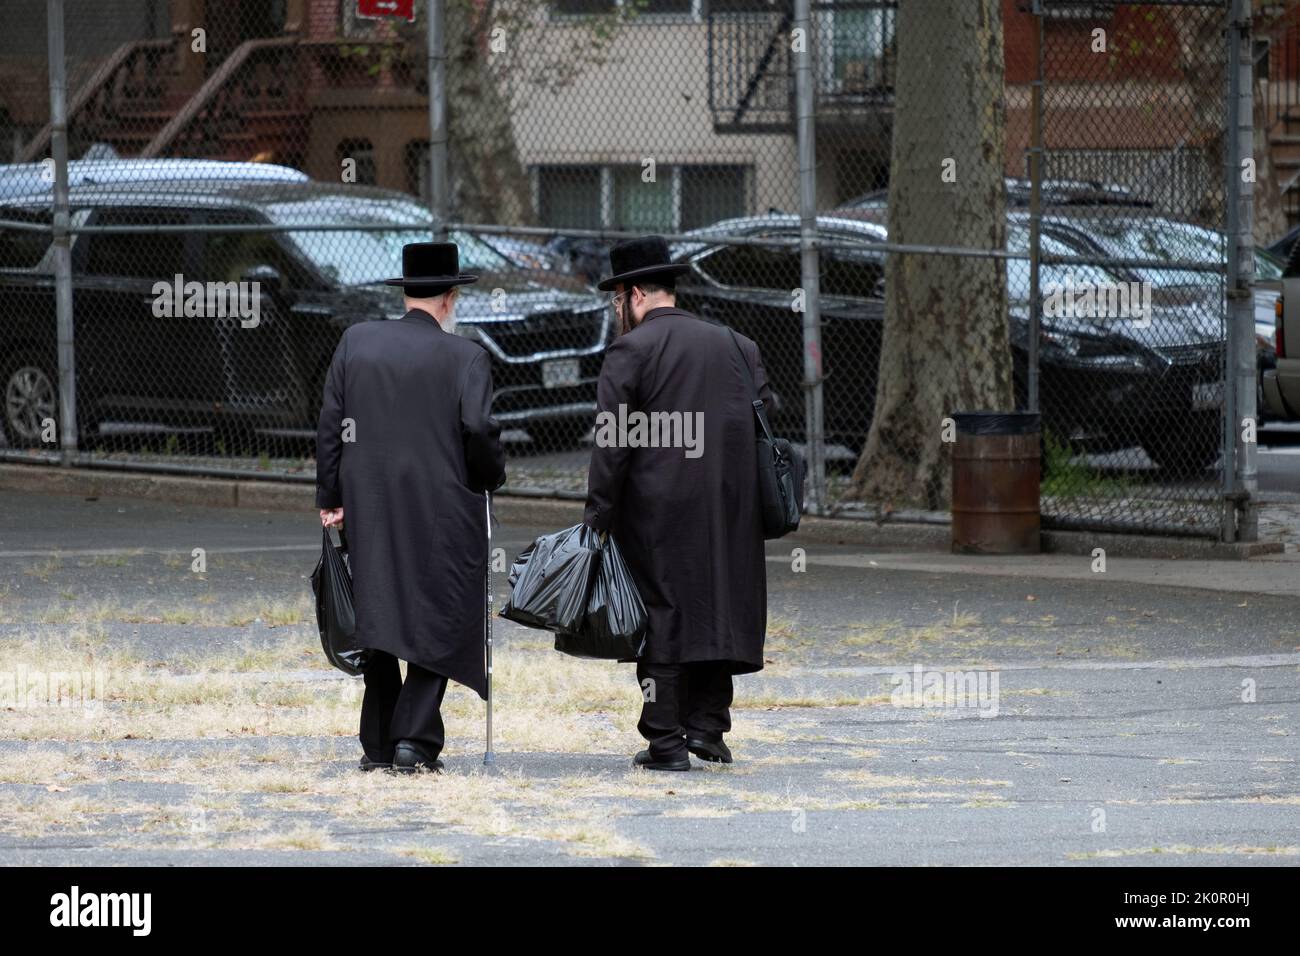 Due ebrei hassidici, possibilmente la famiglia, ritornano a casa dallo shopping prendendo una scorciatoia attraverso un cortile scolastico. A Williamsburg, Brooklyn, New York. Foto Stock